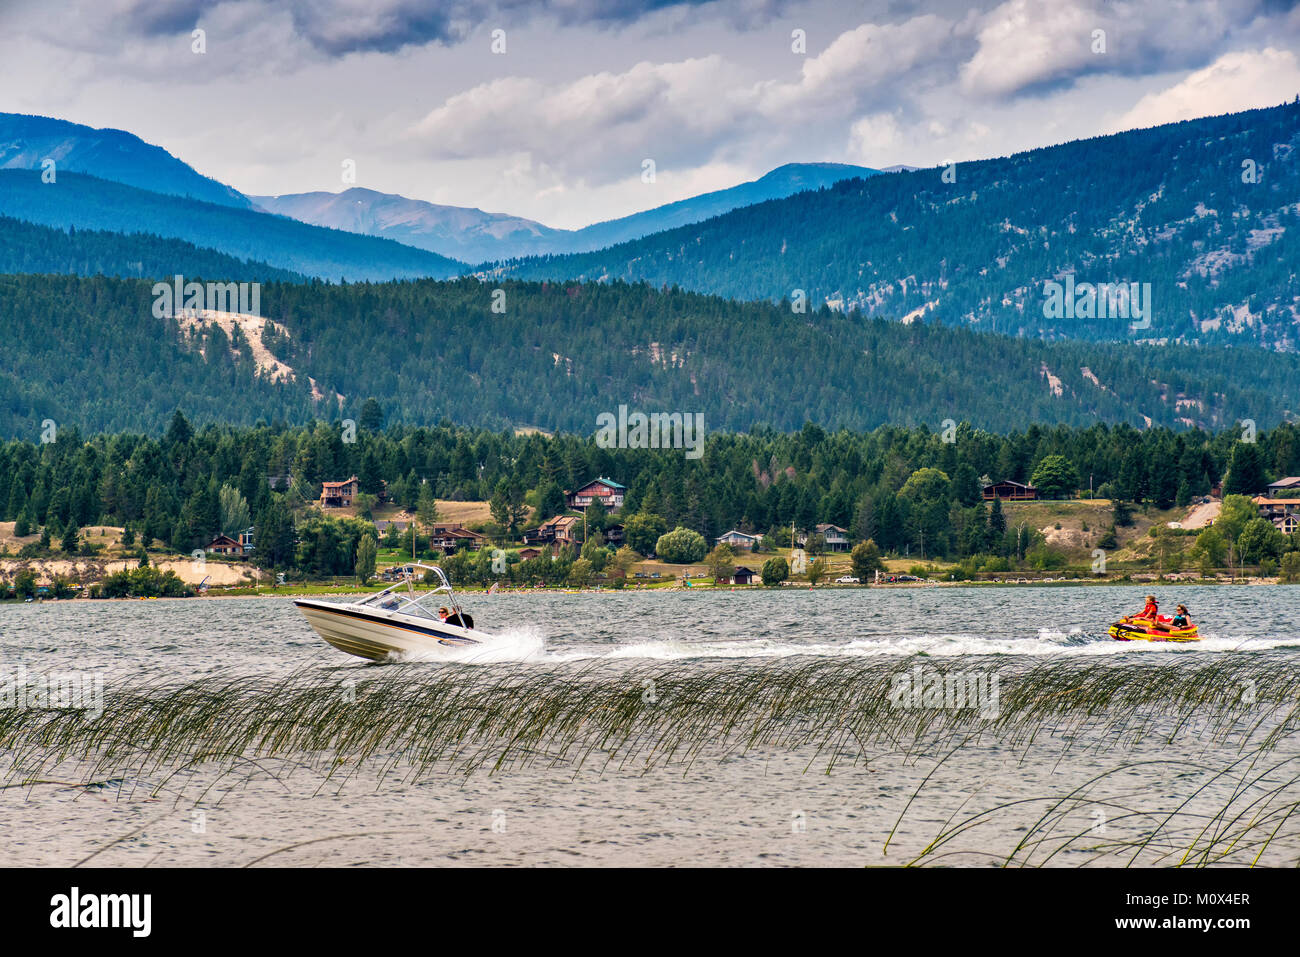 Lancha tirando de la mujer y la niña en el bote de goma, el lago Windermere, Columbia Valley, Purcell Mountains, cerca de Invermere, British Columbia, Canadá Foto de stock